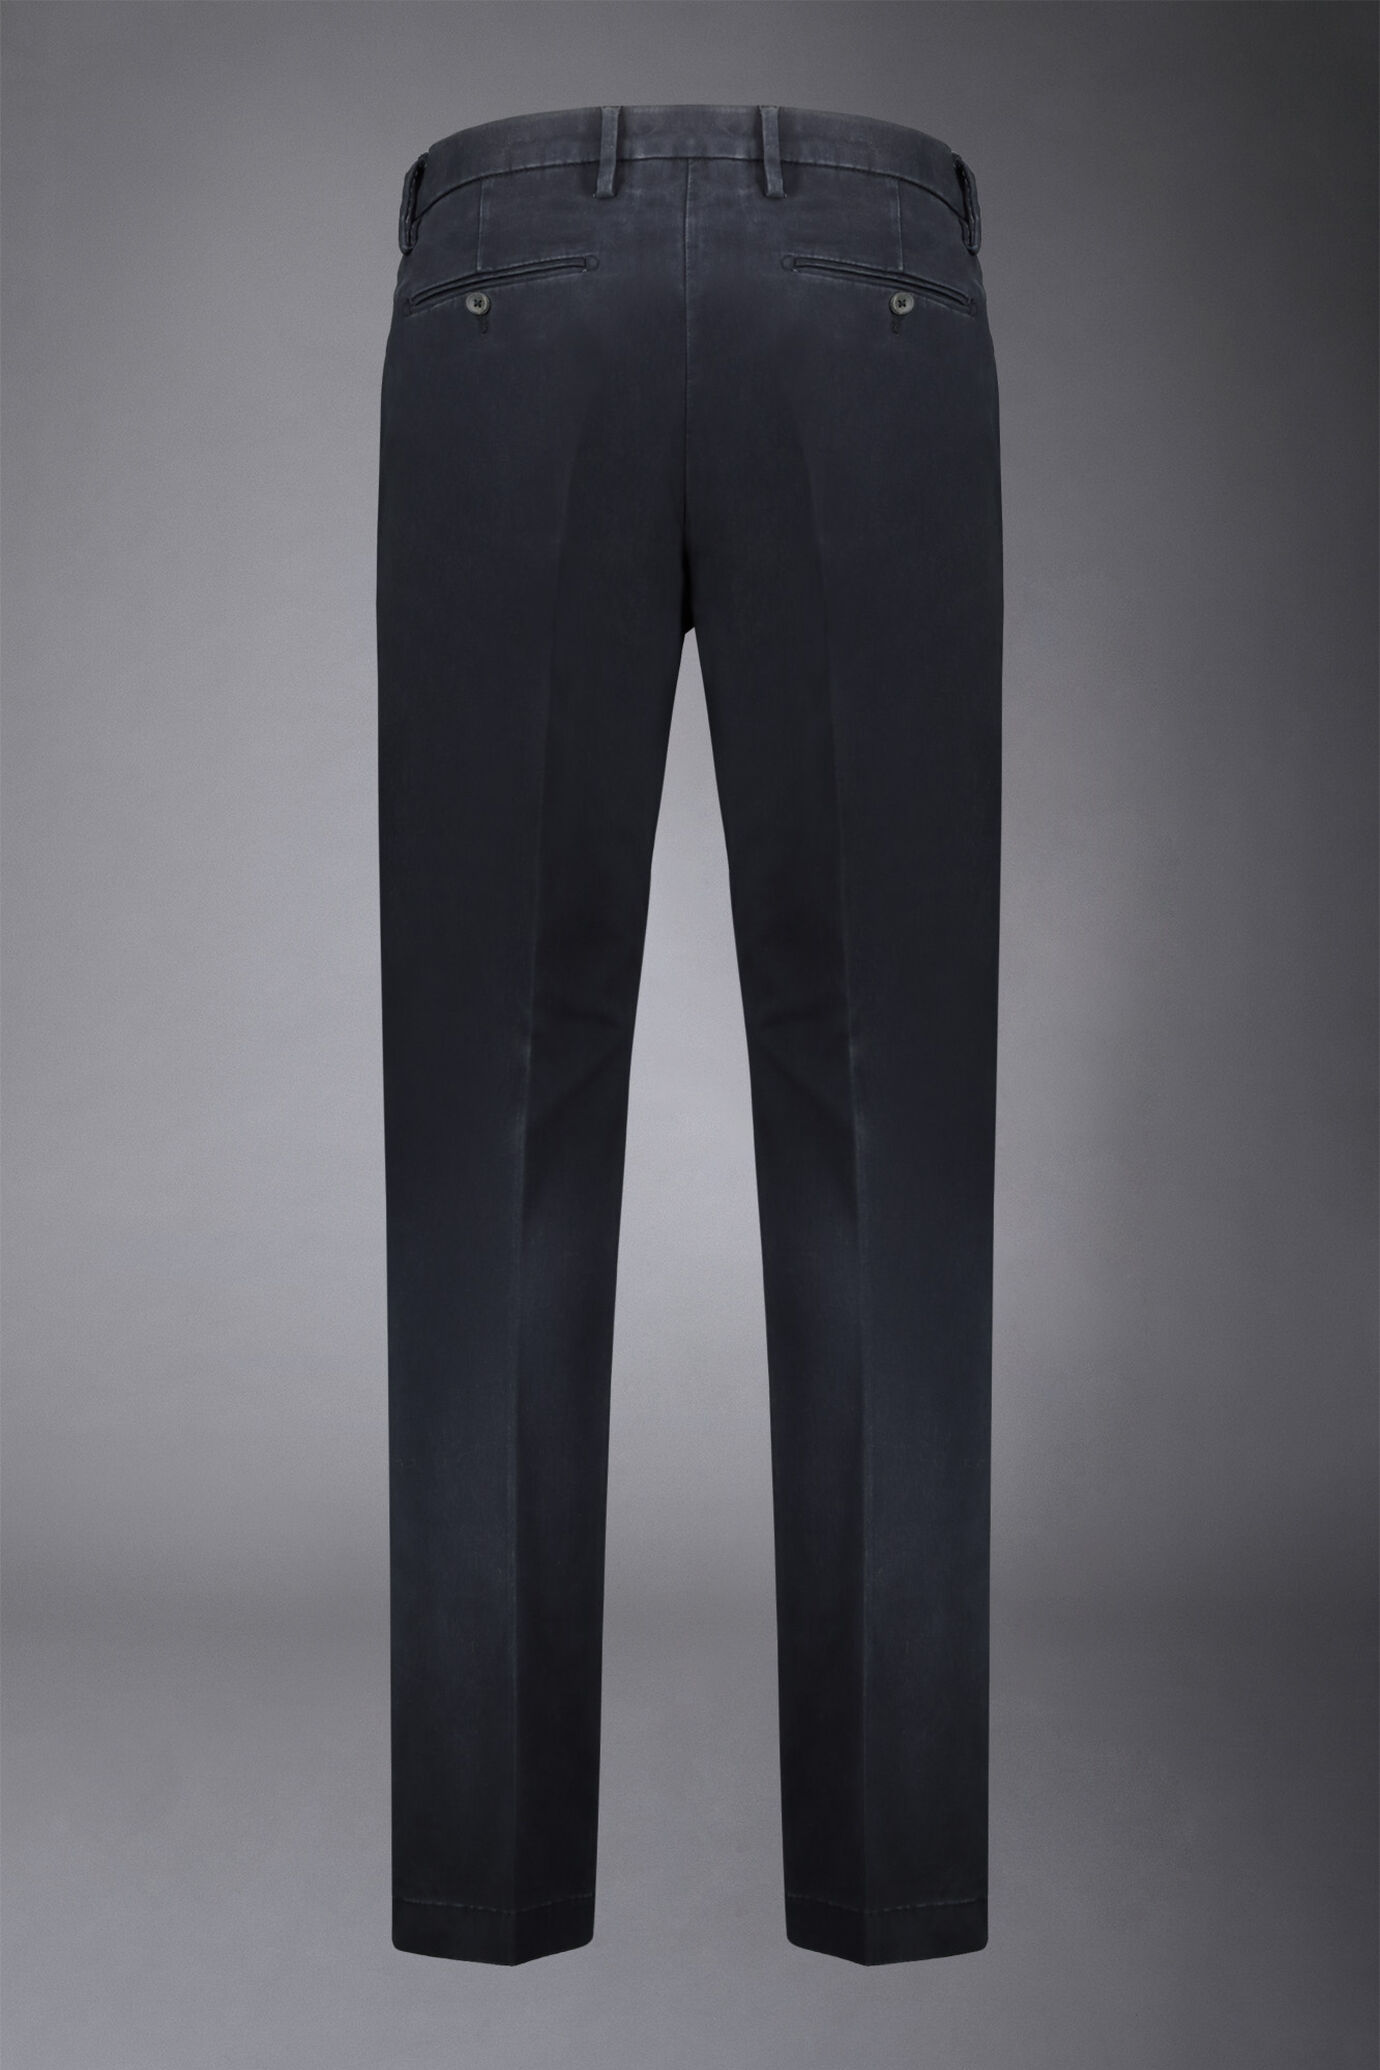 Pantalone chino uomo classico regular fit tessuto twill elasticizzato image number 1